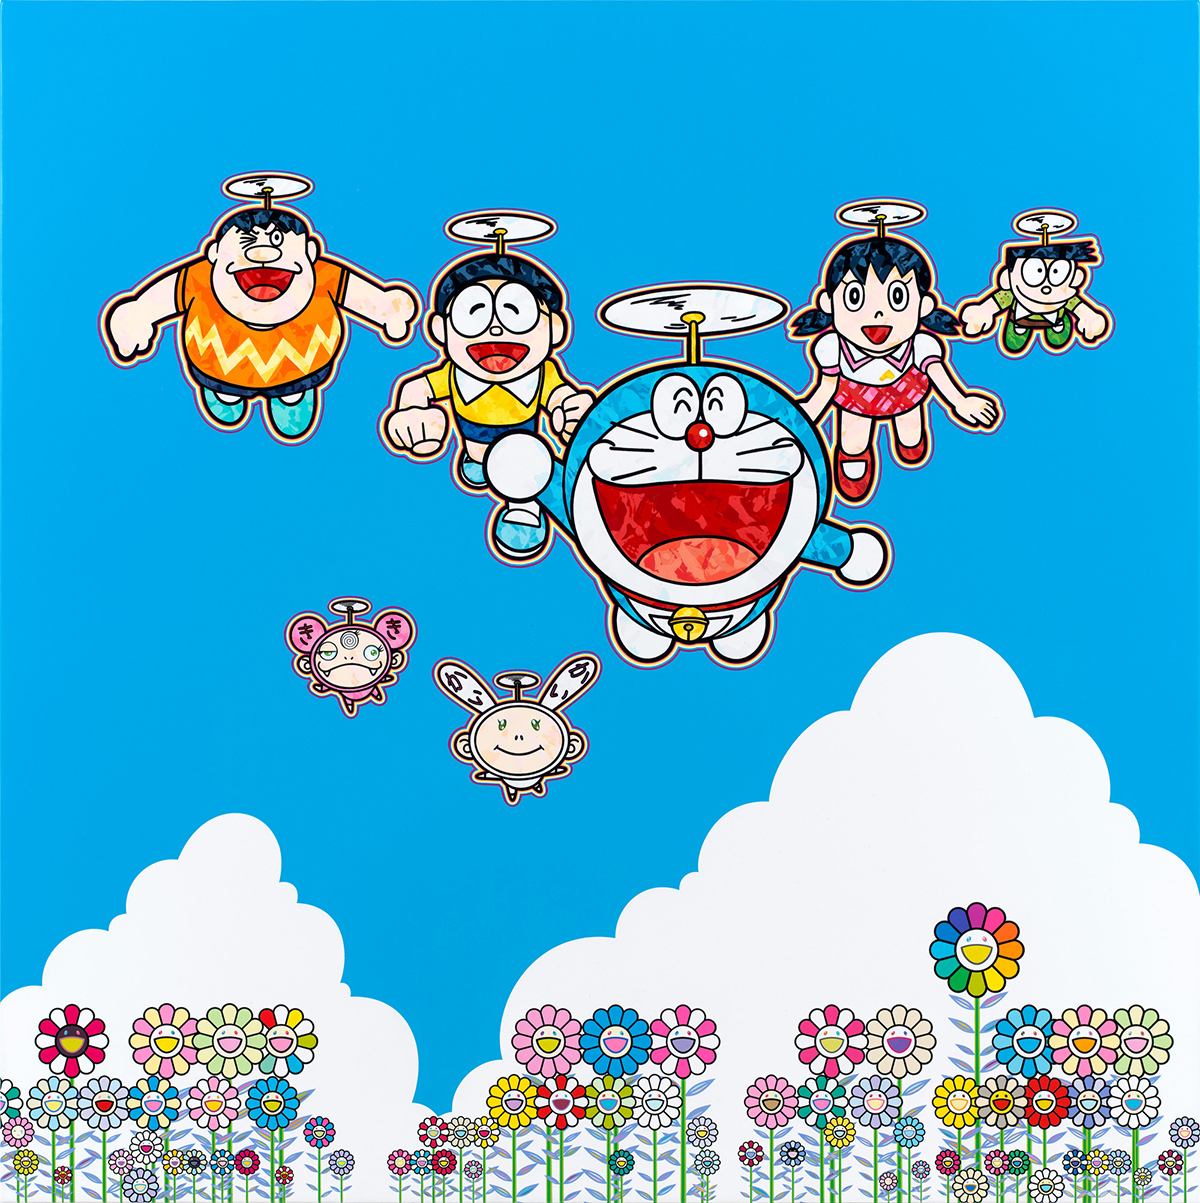 Celebrating 50 Years of Doraemon with Takashi Murakami